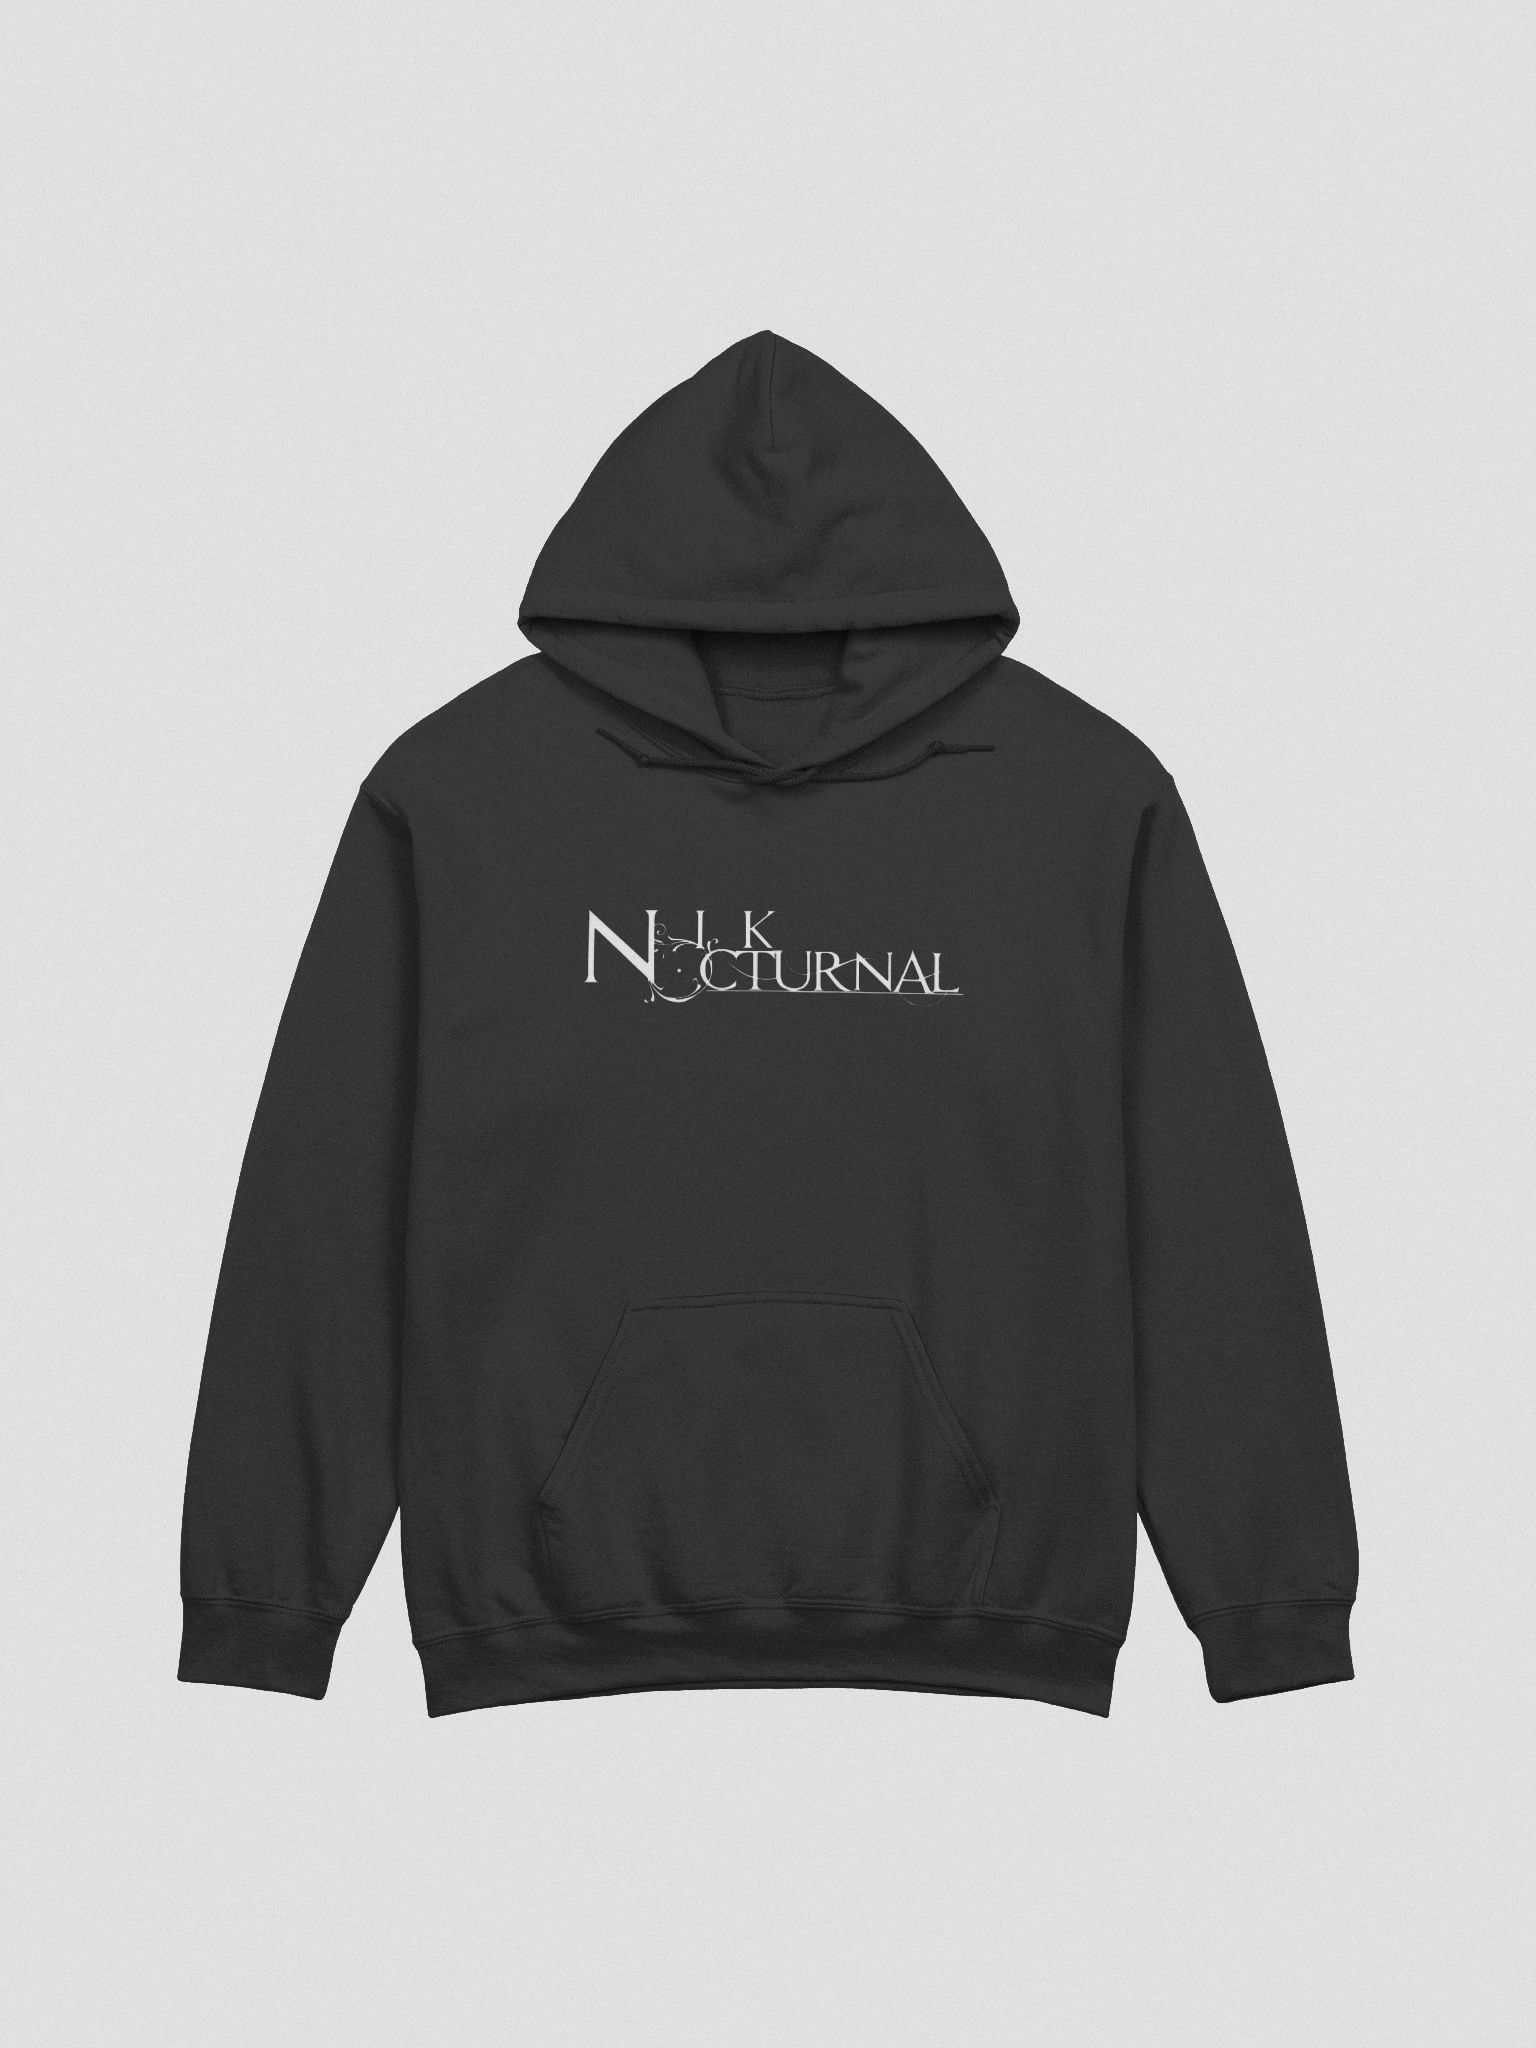 Nik Nocturnal Logo Hoodie - Core Kid